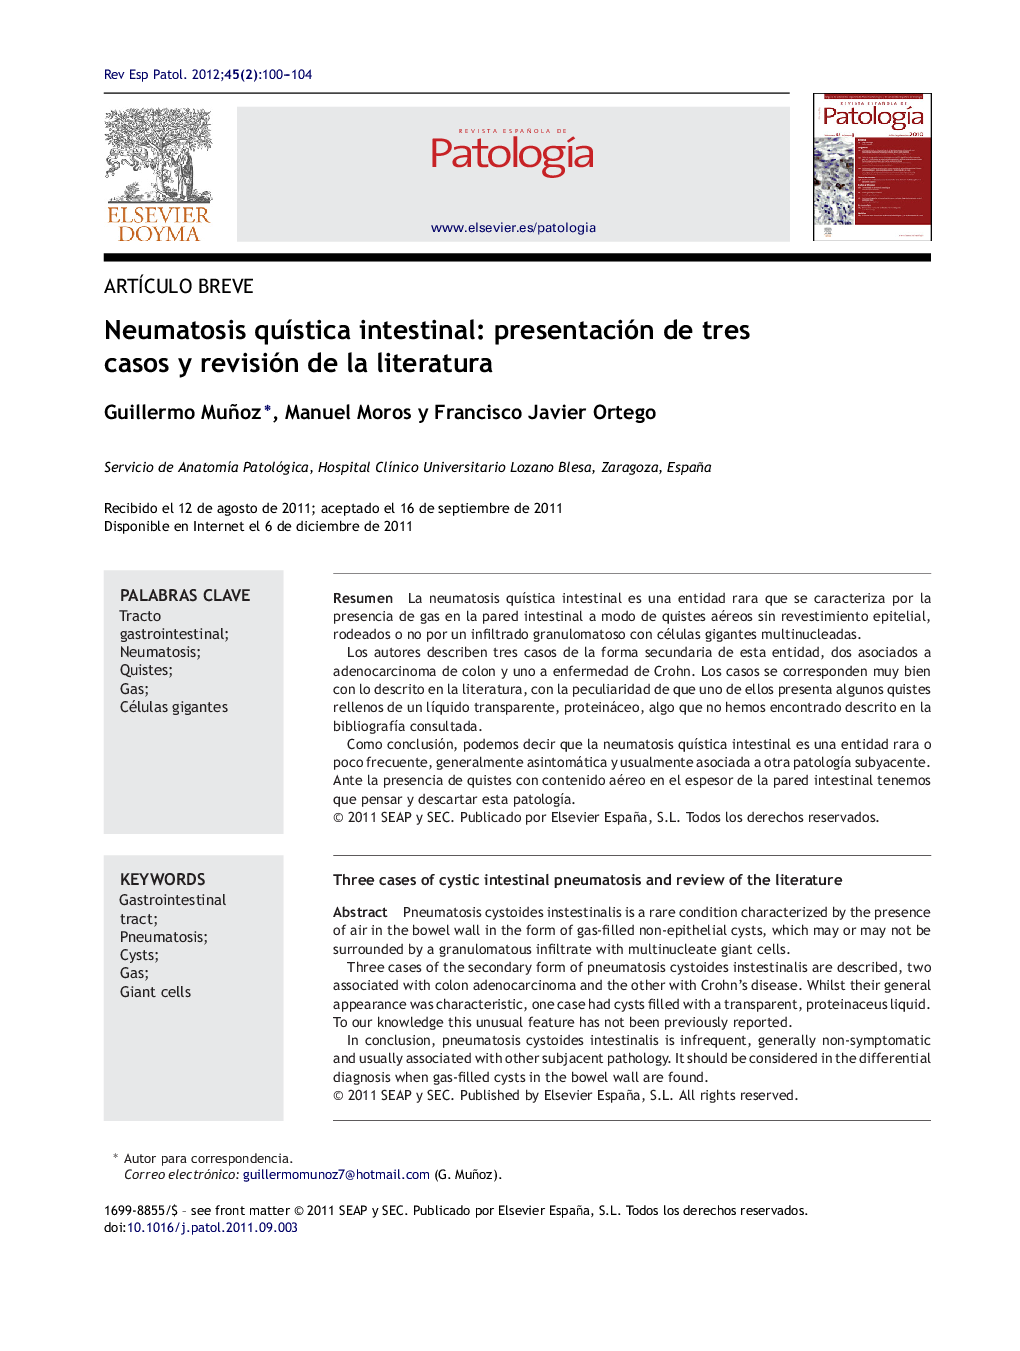 Neumatosis quística intestinal: presentación de tres casos y revisión de la literatura